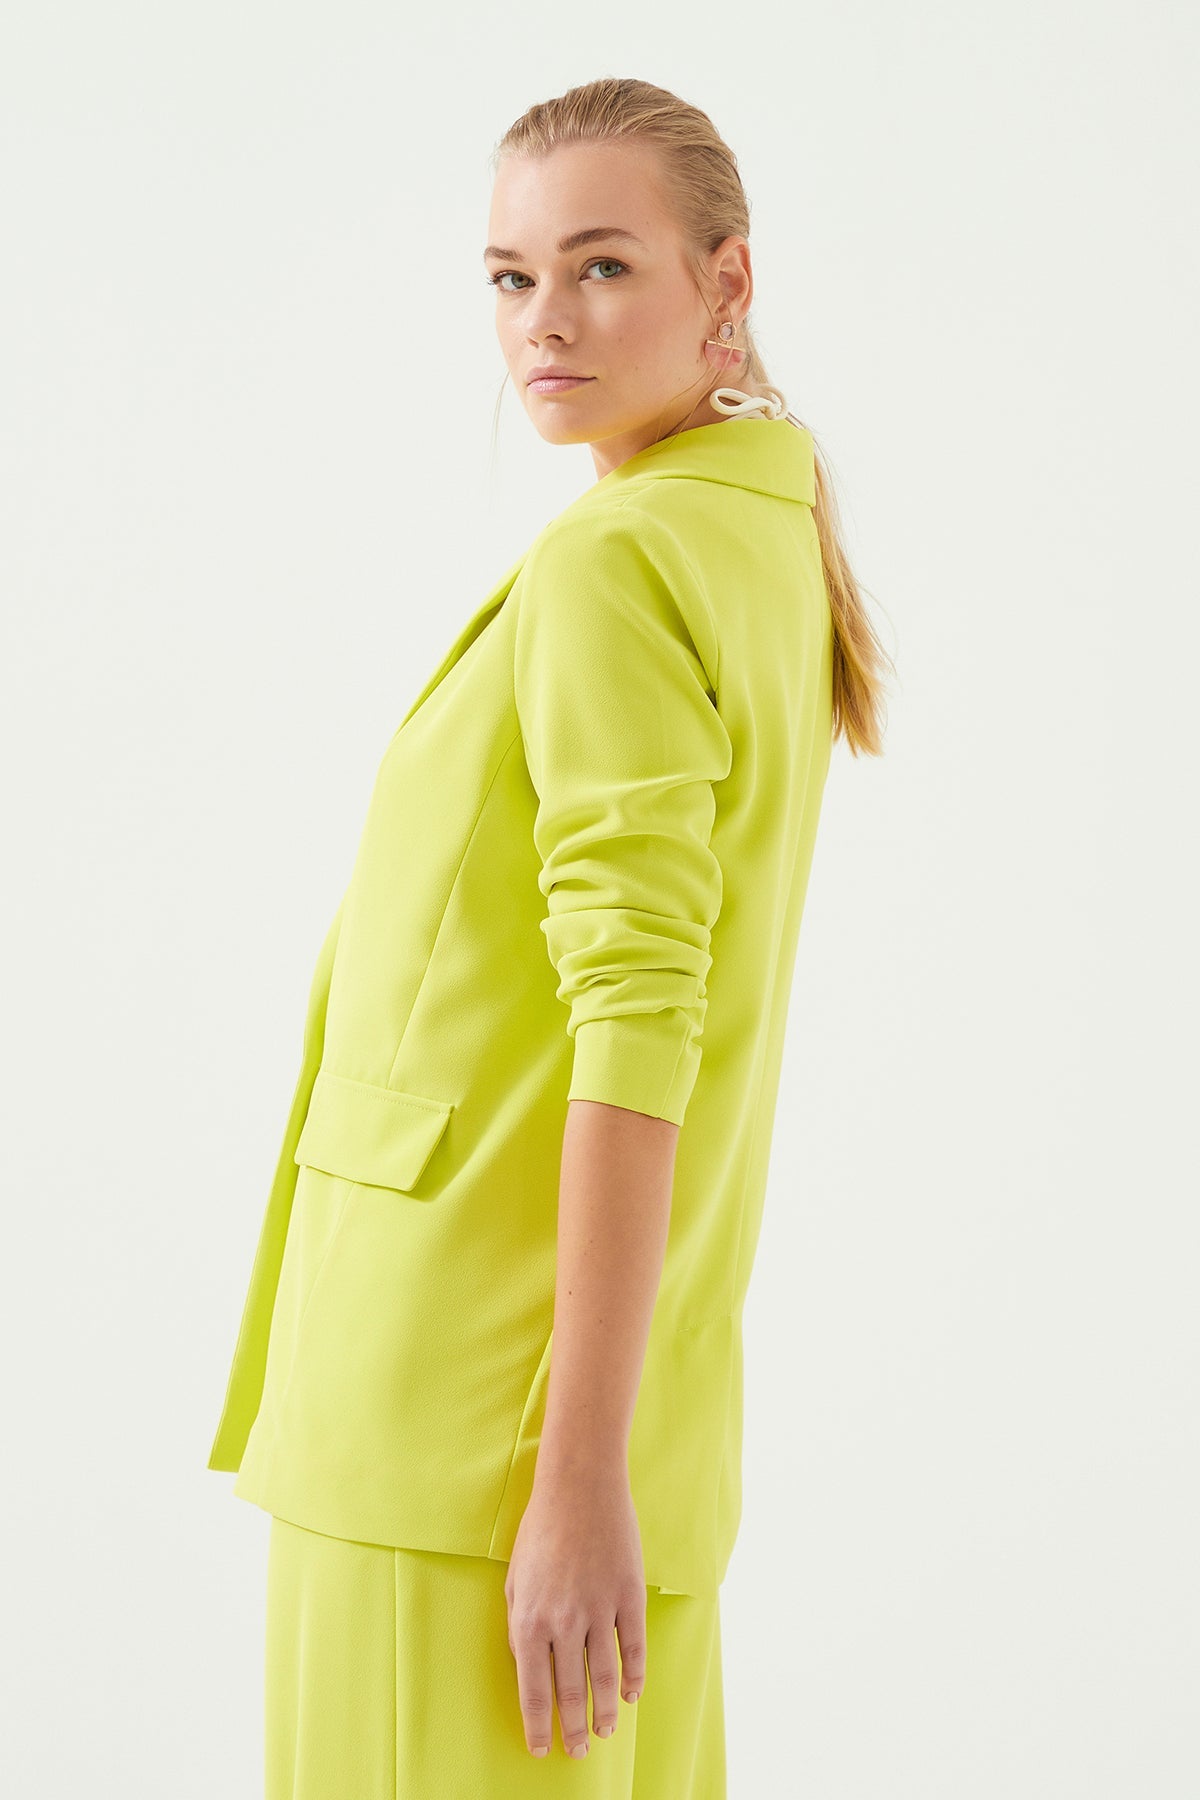 Açık Yeşil Kolları Büzgülü Astarsız Blazer Kadın Ceket